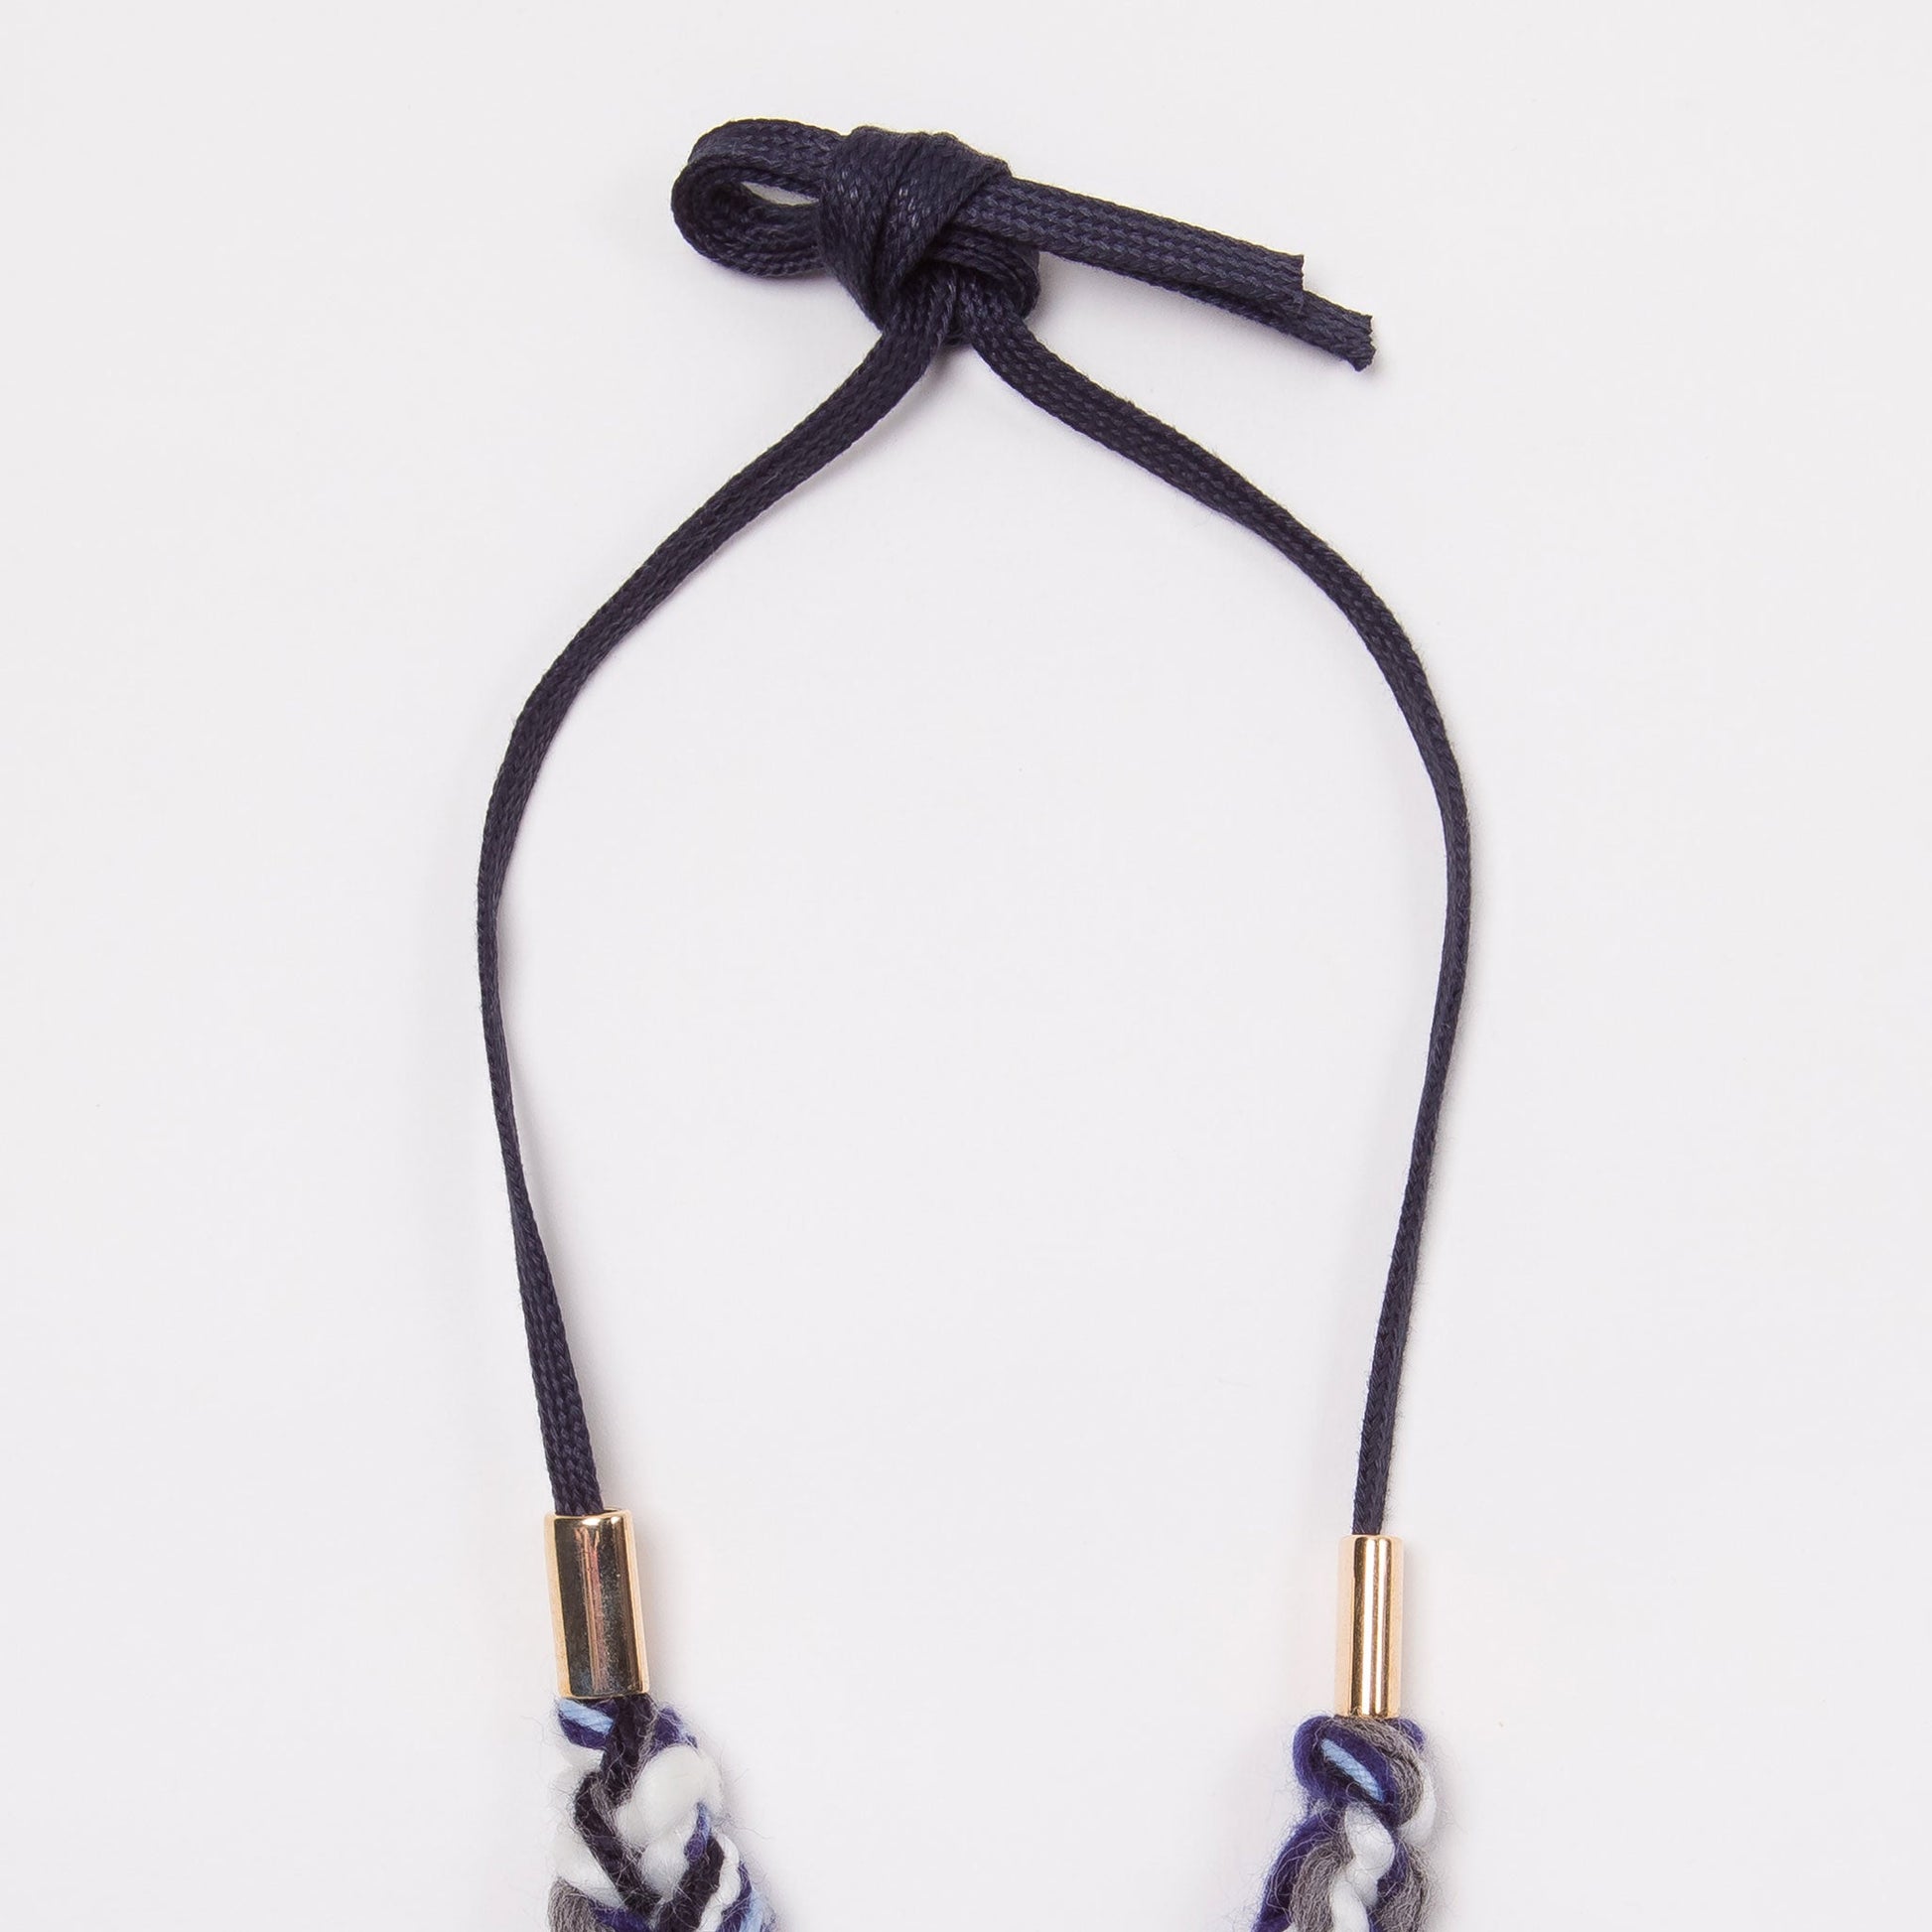 pom pom knit necklace for little girls blue black and grey adjustable